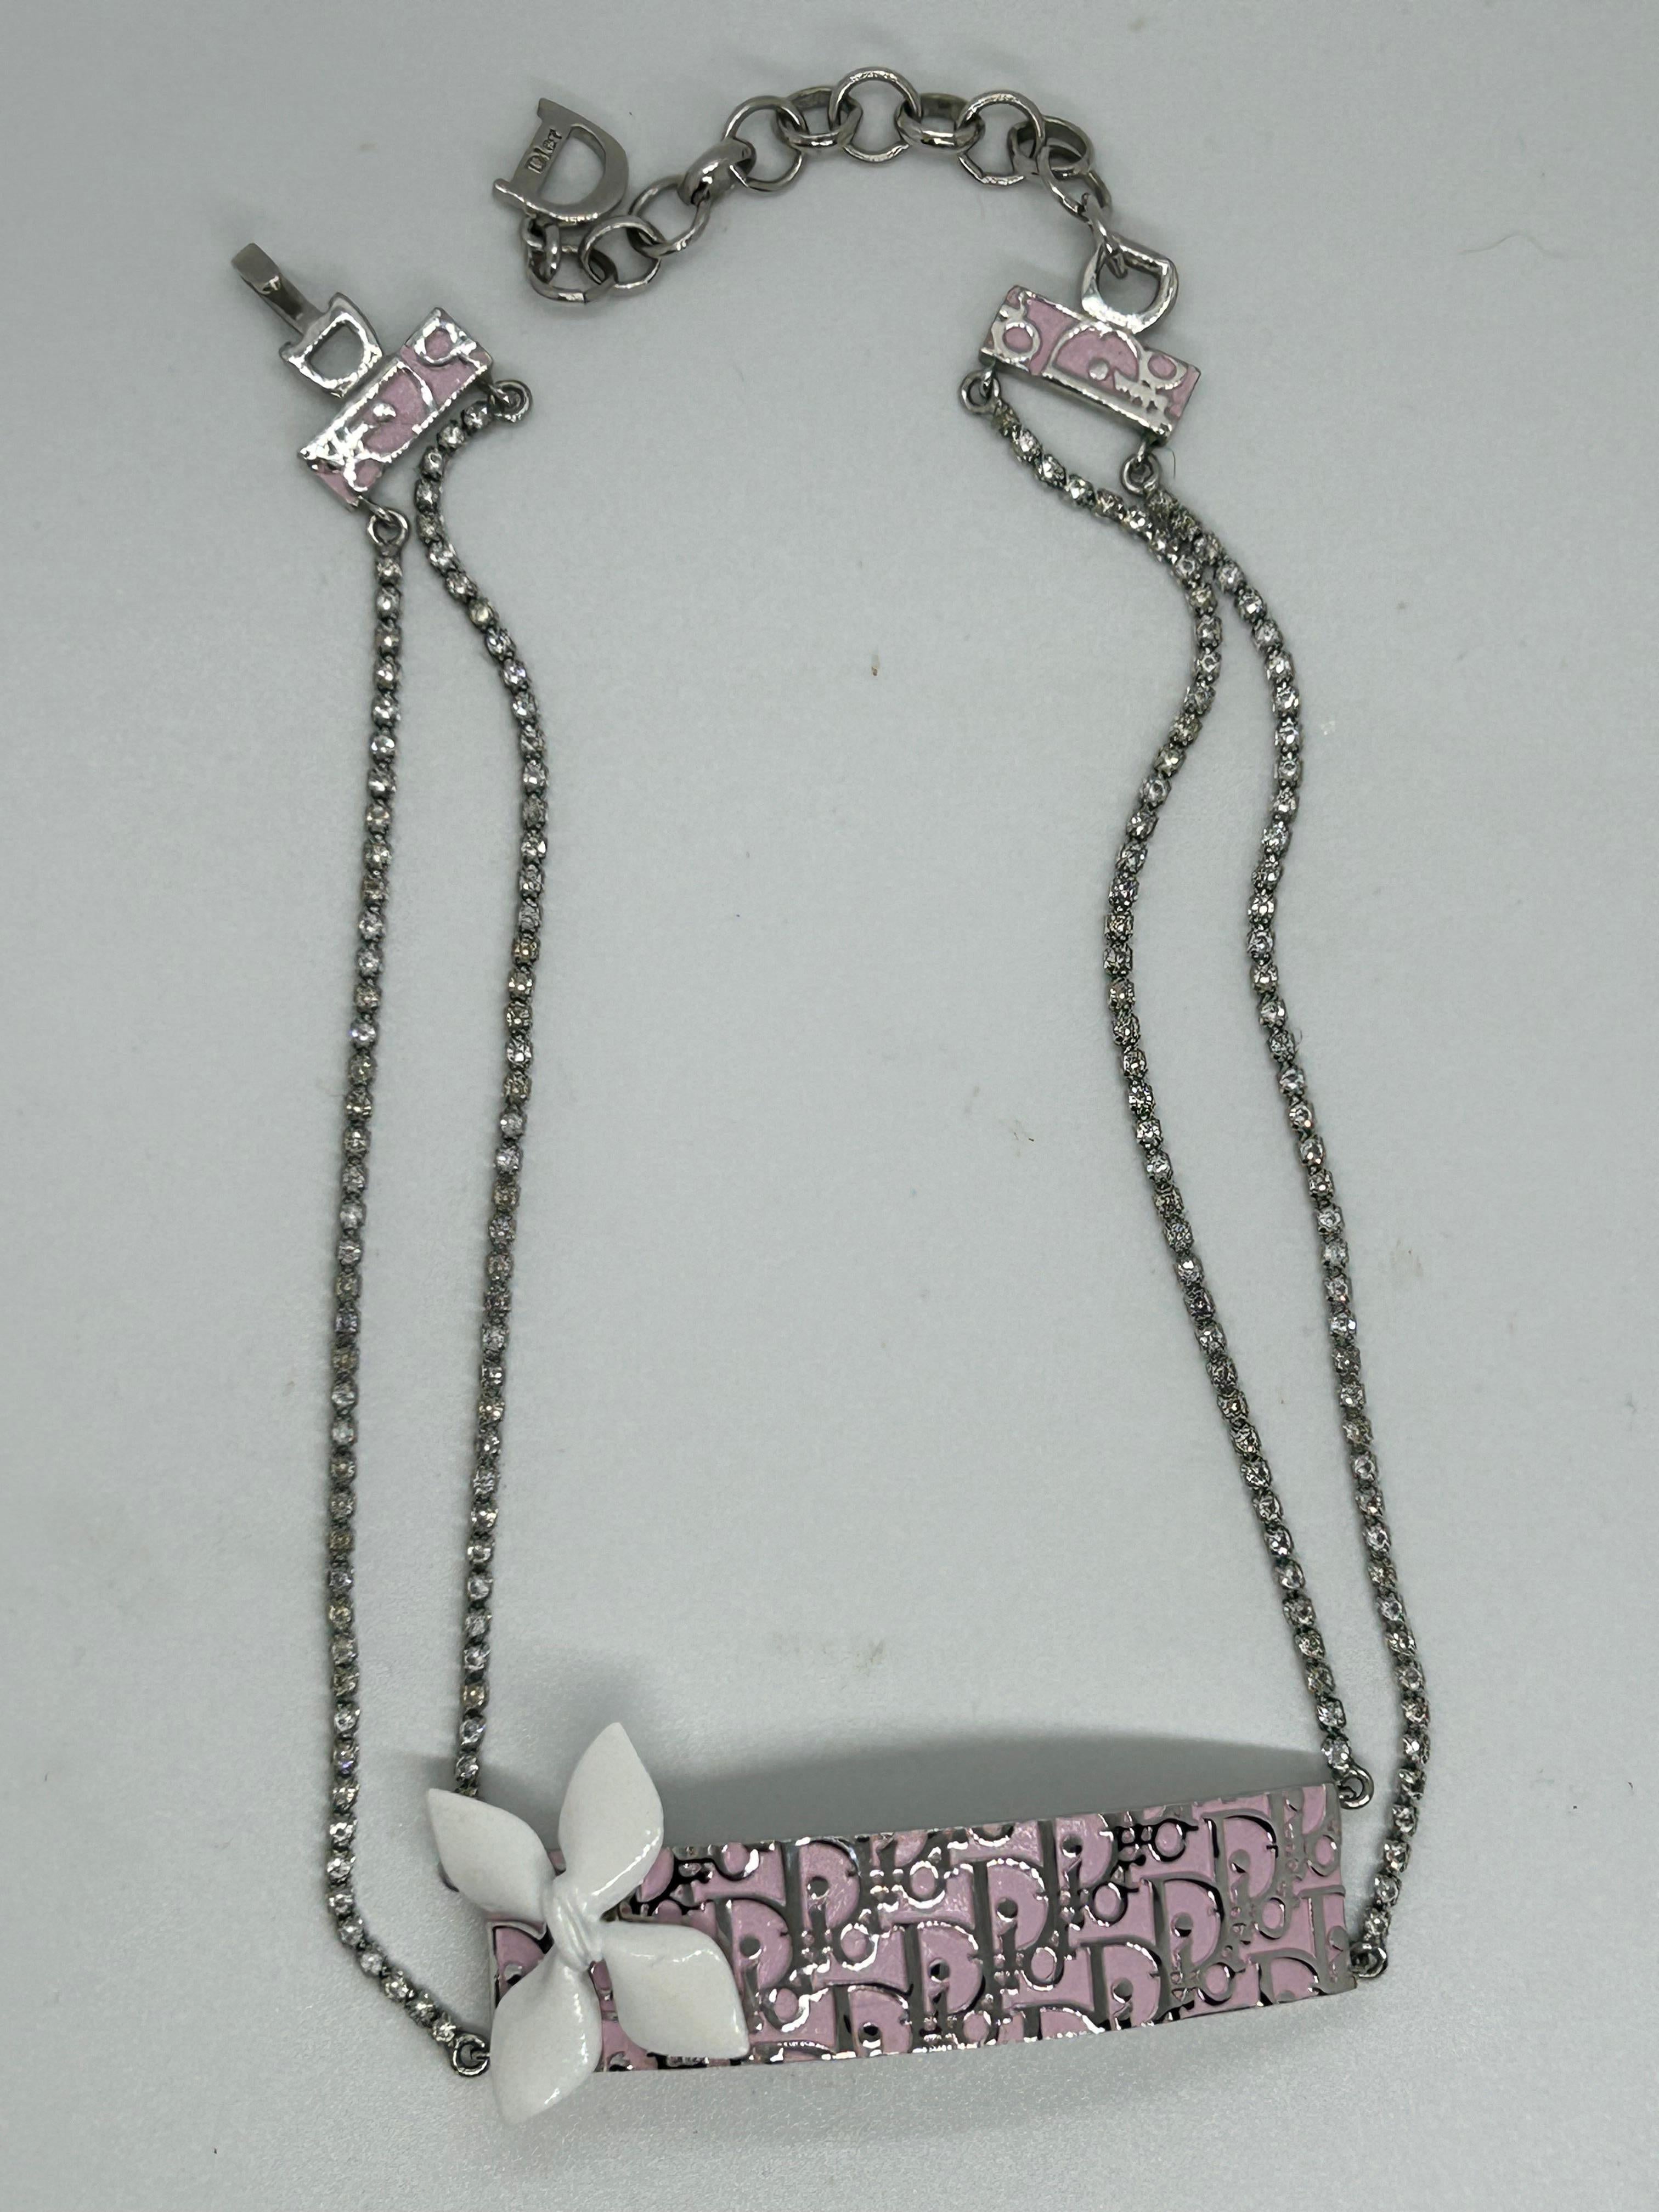 Un magnifique collier ras de cou rose à logo de Christian Dior.
Ce magnifique collier est une très belle pièce.
Fond rose pastel avec logo Dior argenté et un joli pétale en émail blanc dans un coin .
Deux chaînes avec des cristaux diamantés et une